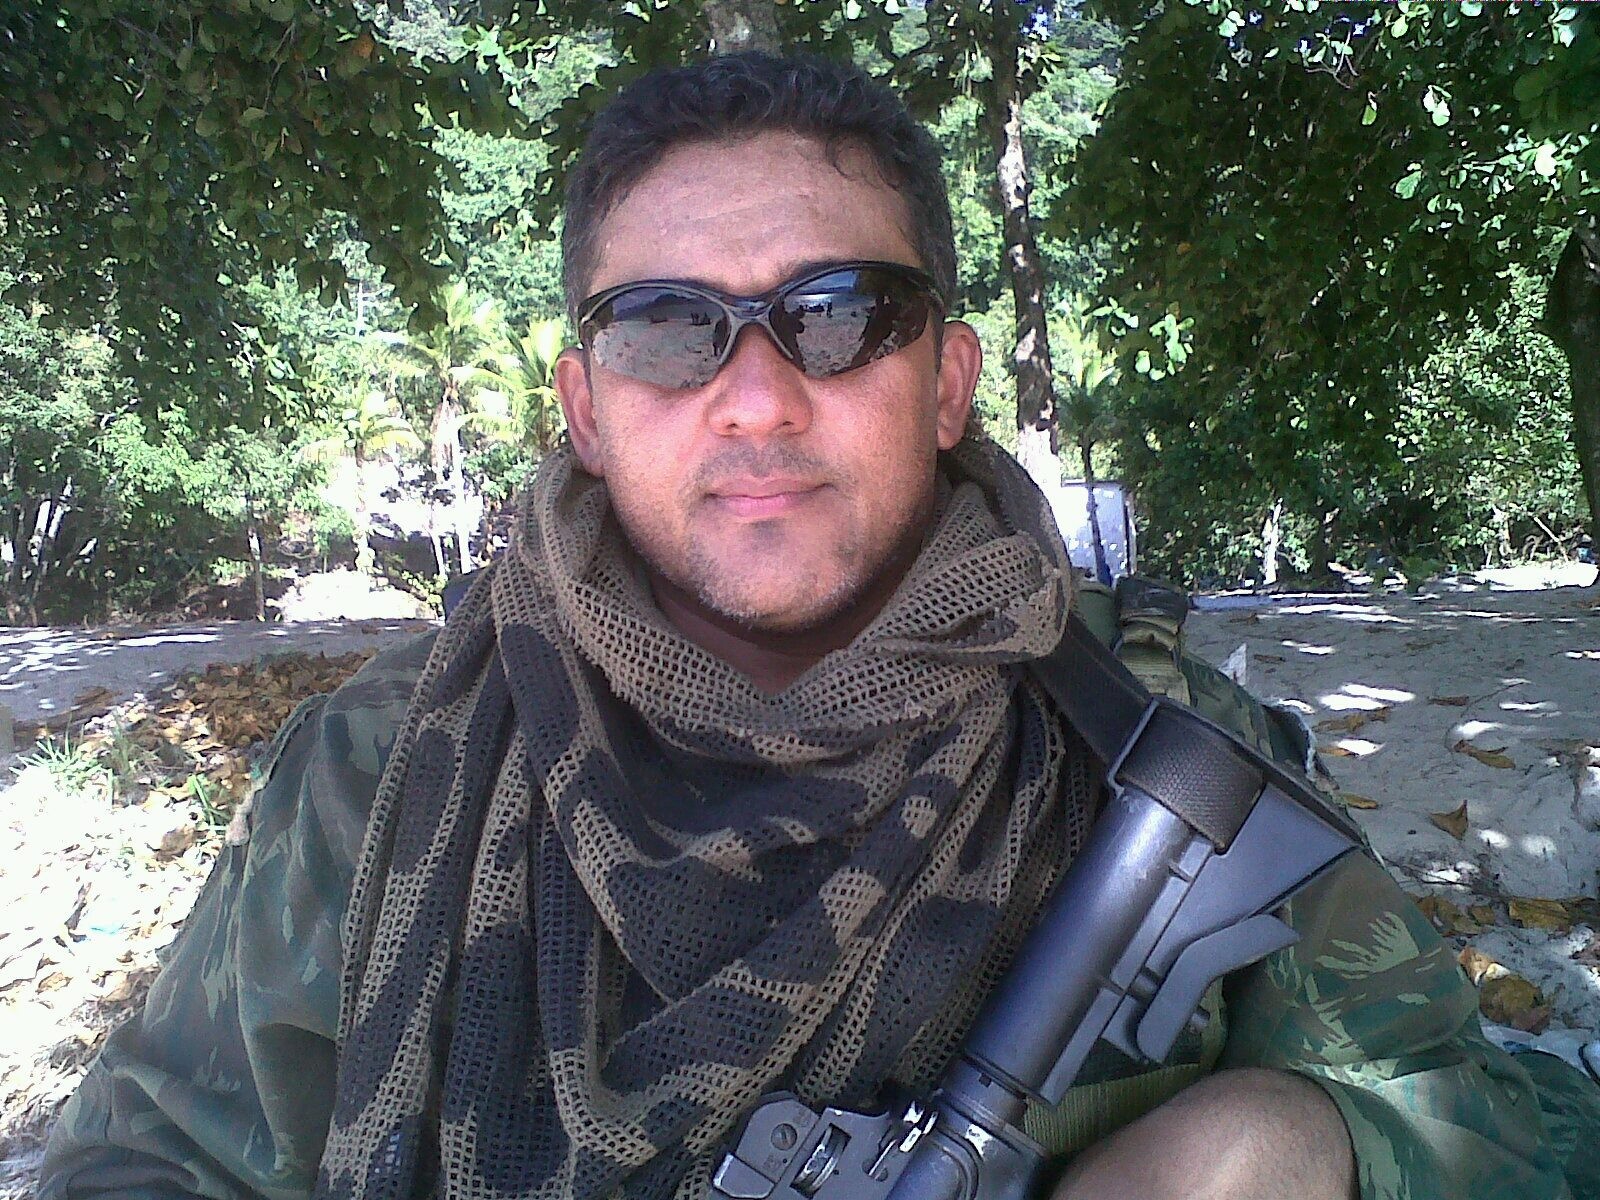 O ex-fuzileiro naval Jussielson Silva, que chefiava a Funai no município de Ribeirão Cascalheira (MT), exibe fotos com roupa militar e armas nas redes sociais — Foto: Reprodução